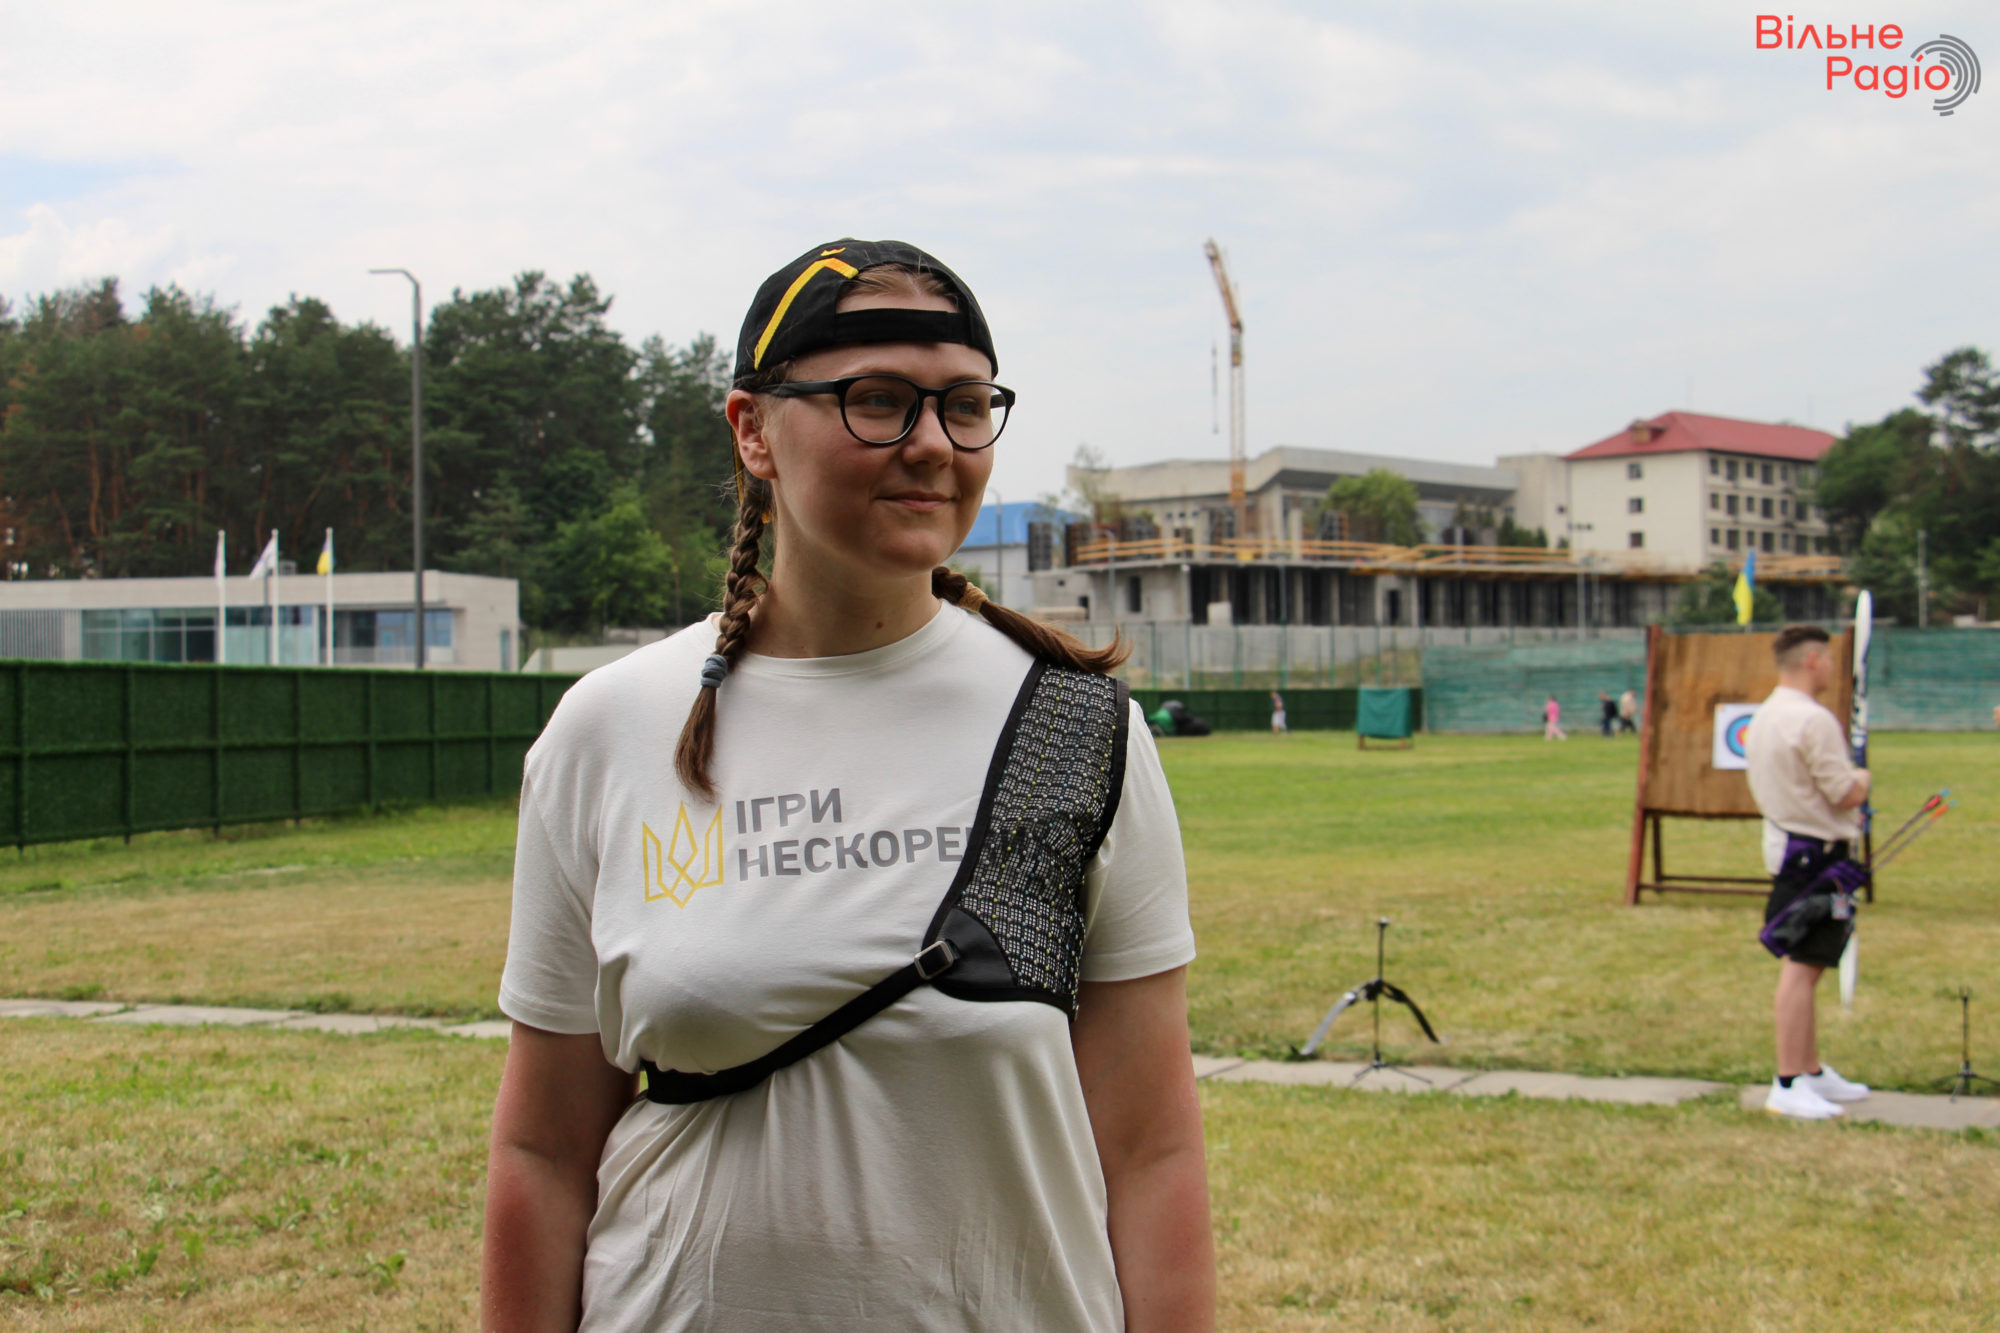 Спорт как реабилитация. Как украинские ветераны готовятся к Invictus Games и почему это важно (ФОТОРЕПОРТАЖ) 1